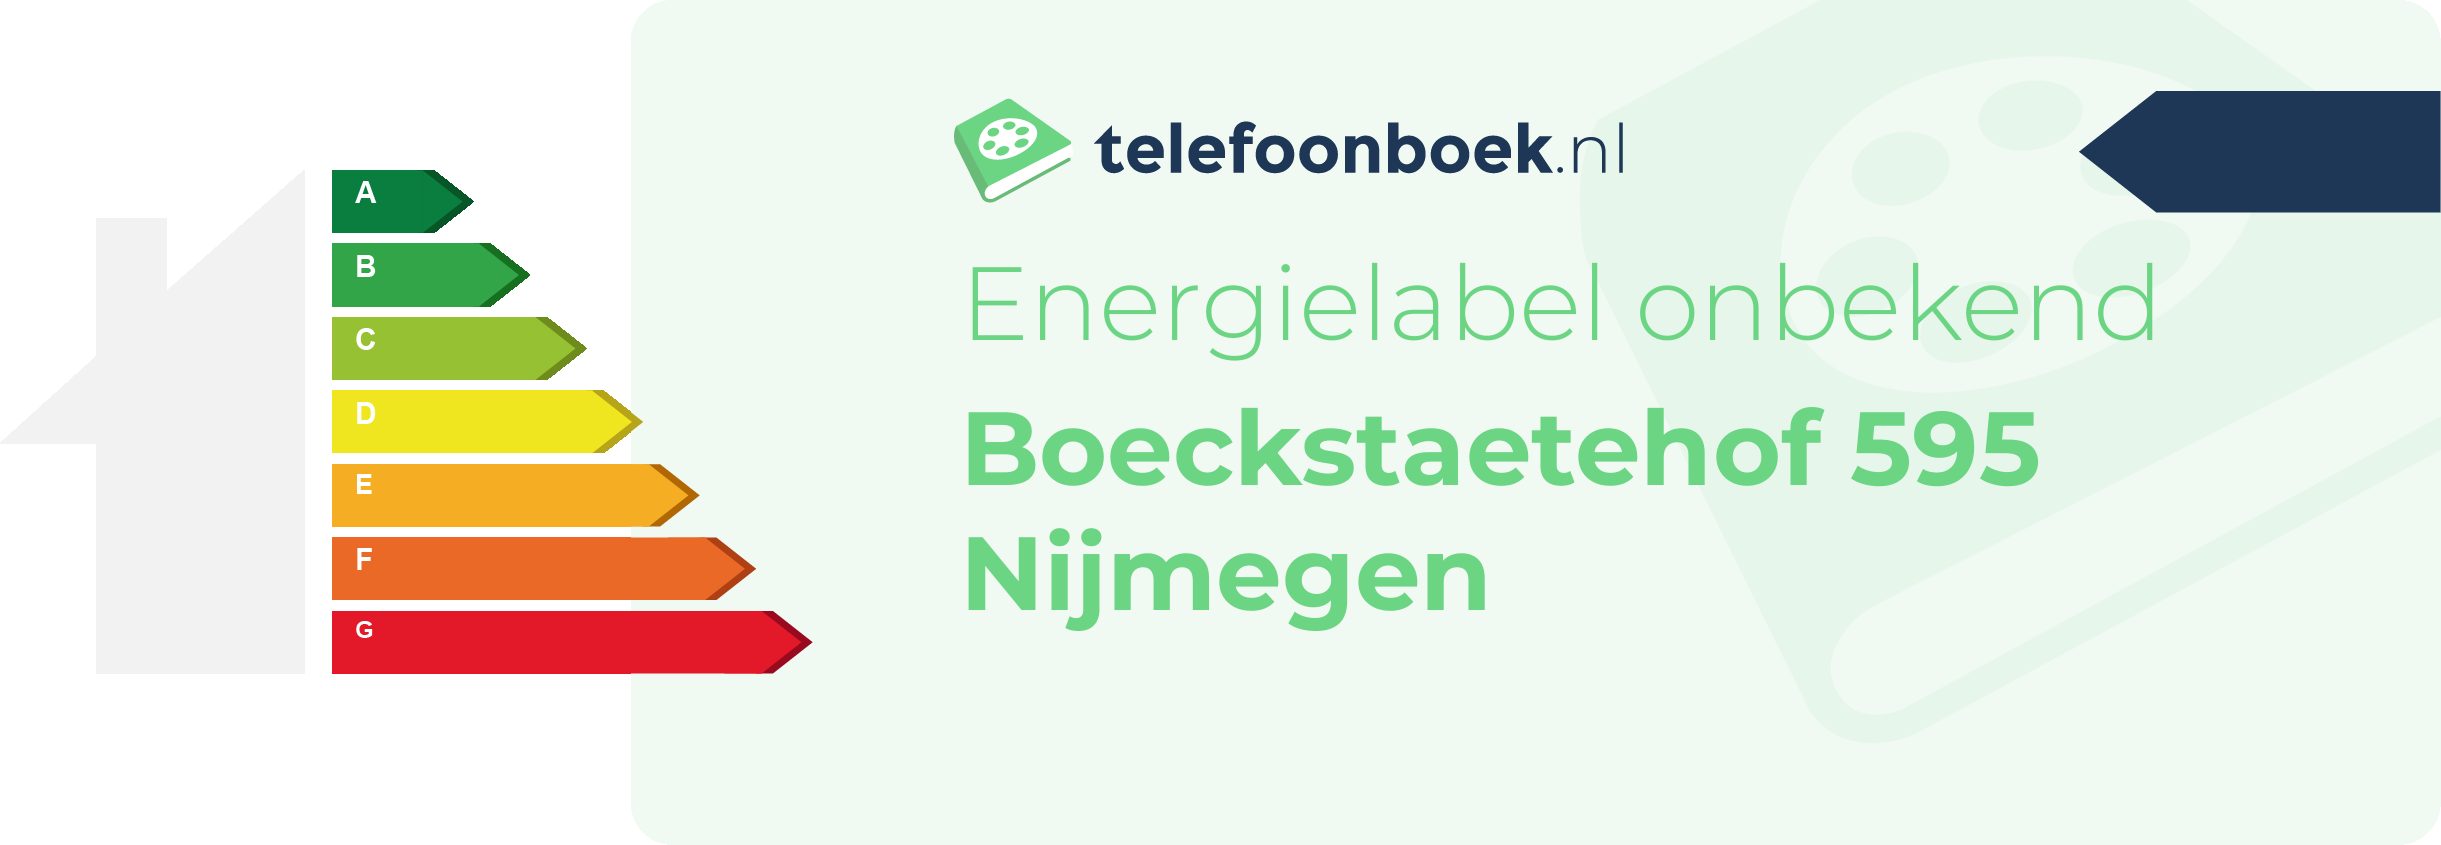 Energielabel Boeckstaetehof 595 Nijmegen